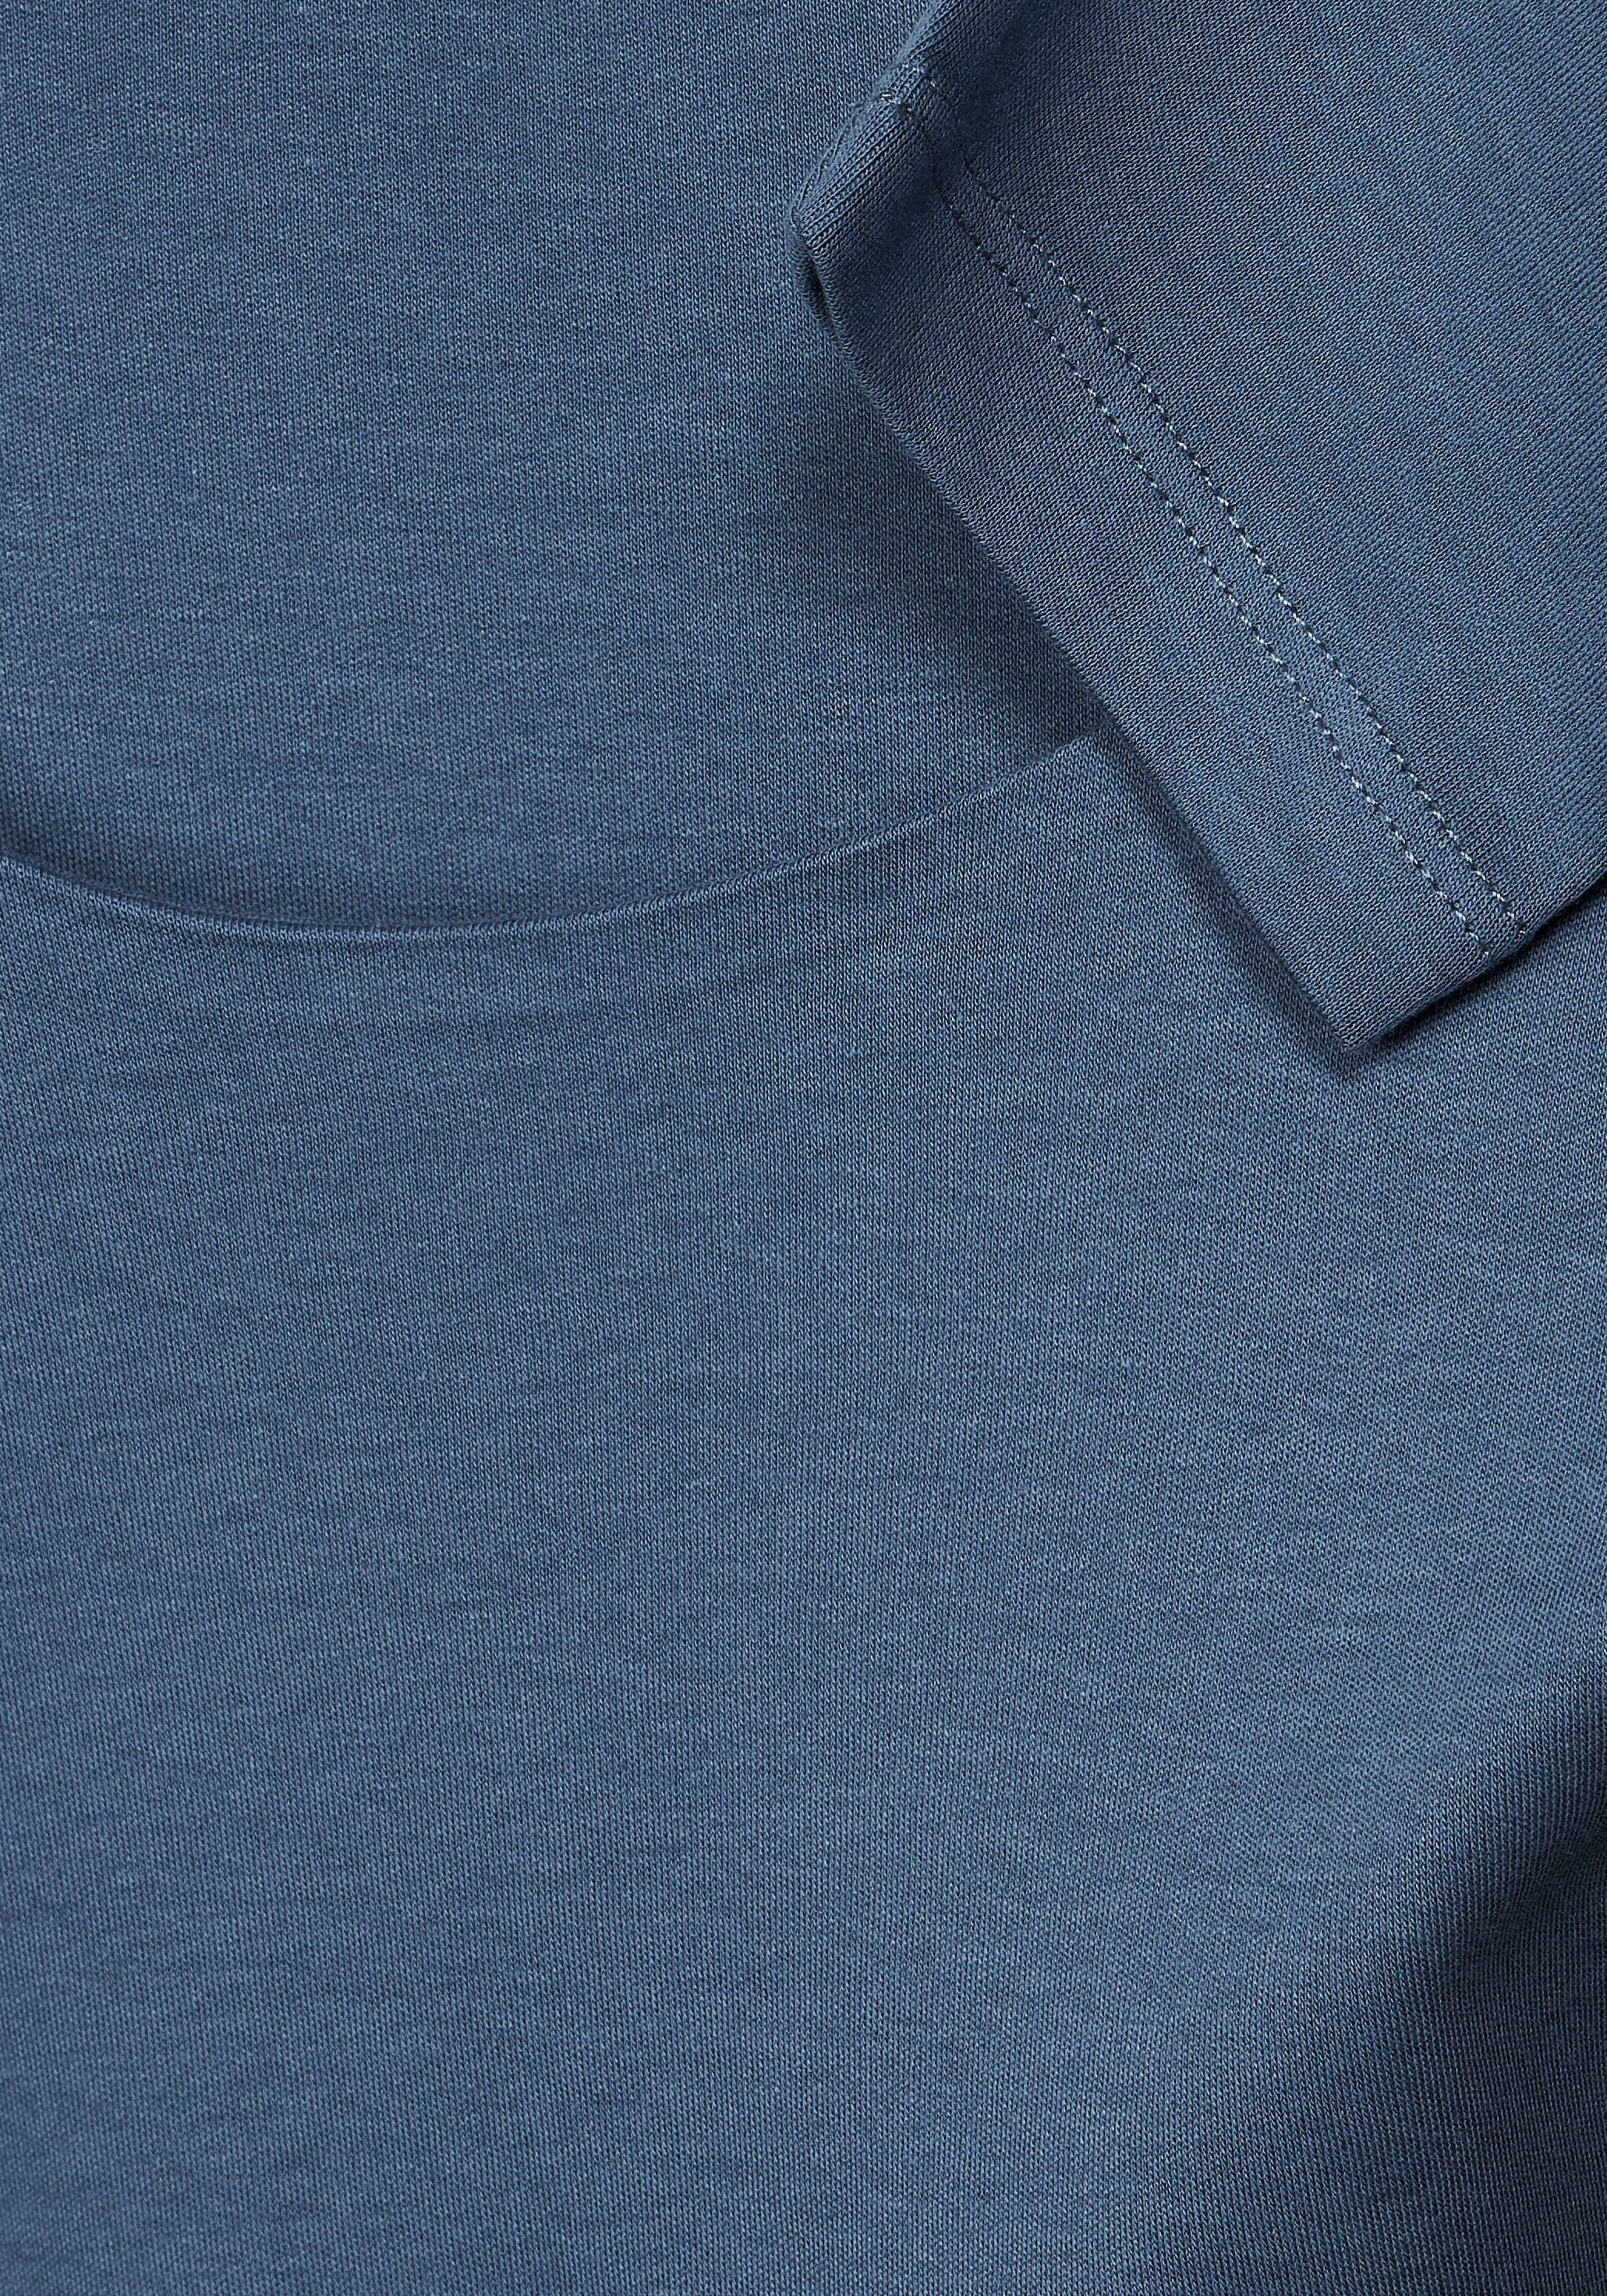 in Pania 3/4-Arm-Shirt schlichter STREET dark Style Unifarbe bay ONE blue